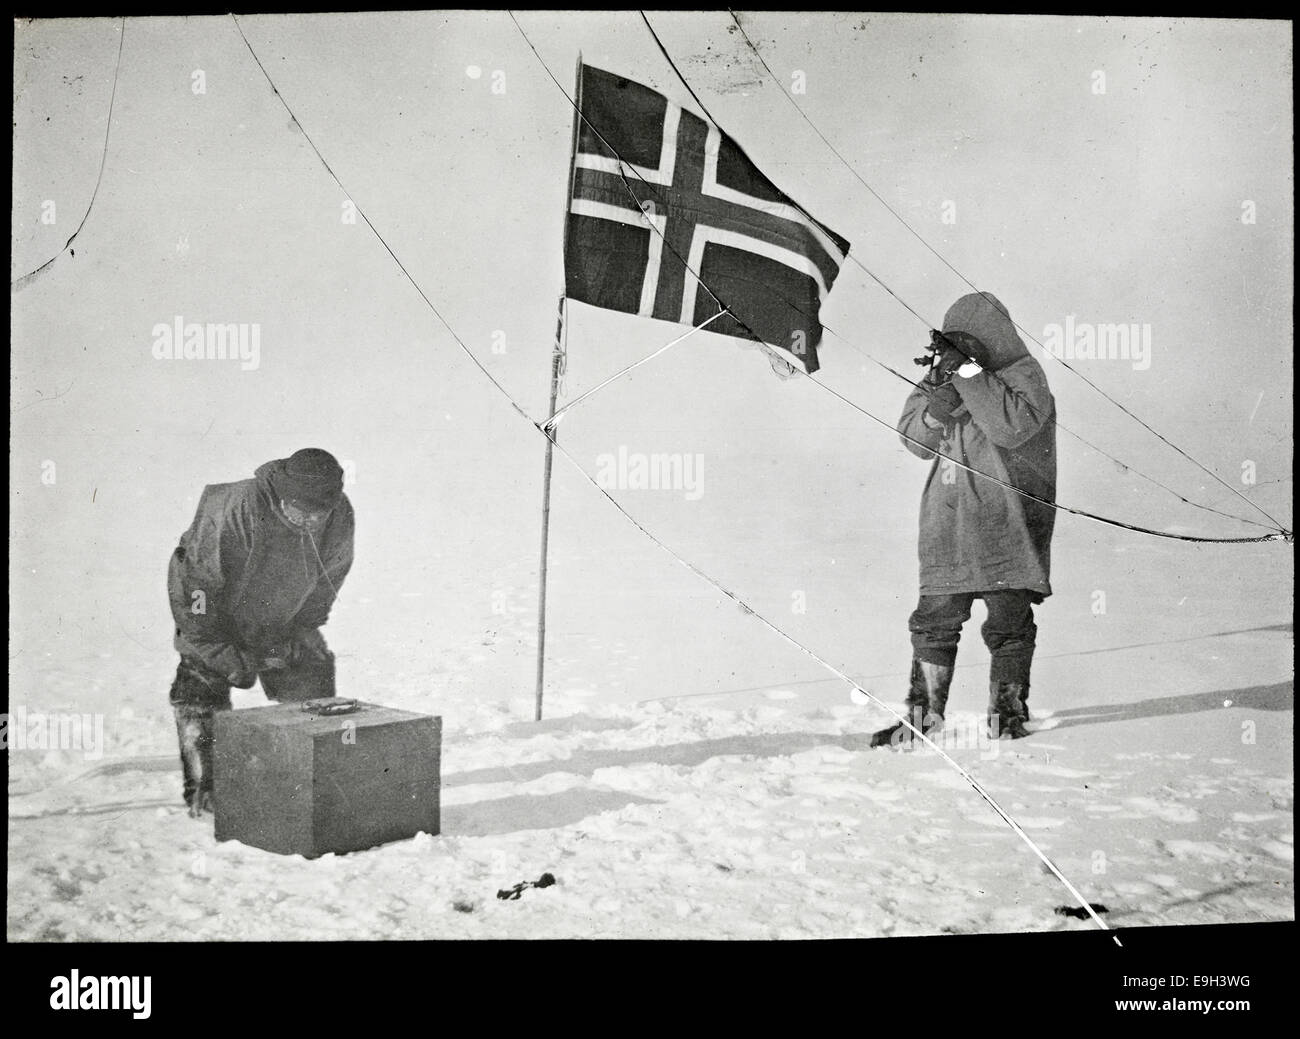 Roald Amundsen Og Helmer Hanssen Gjør Observasjoner På Sydpolen, 1911 Stockfoto